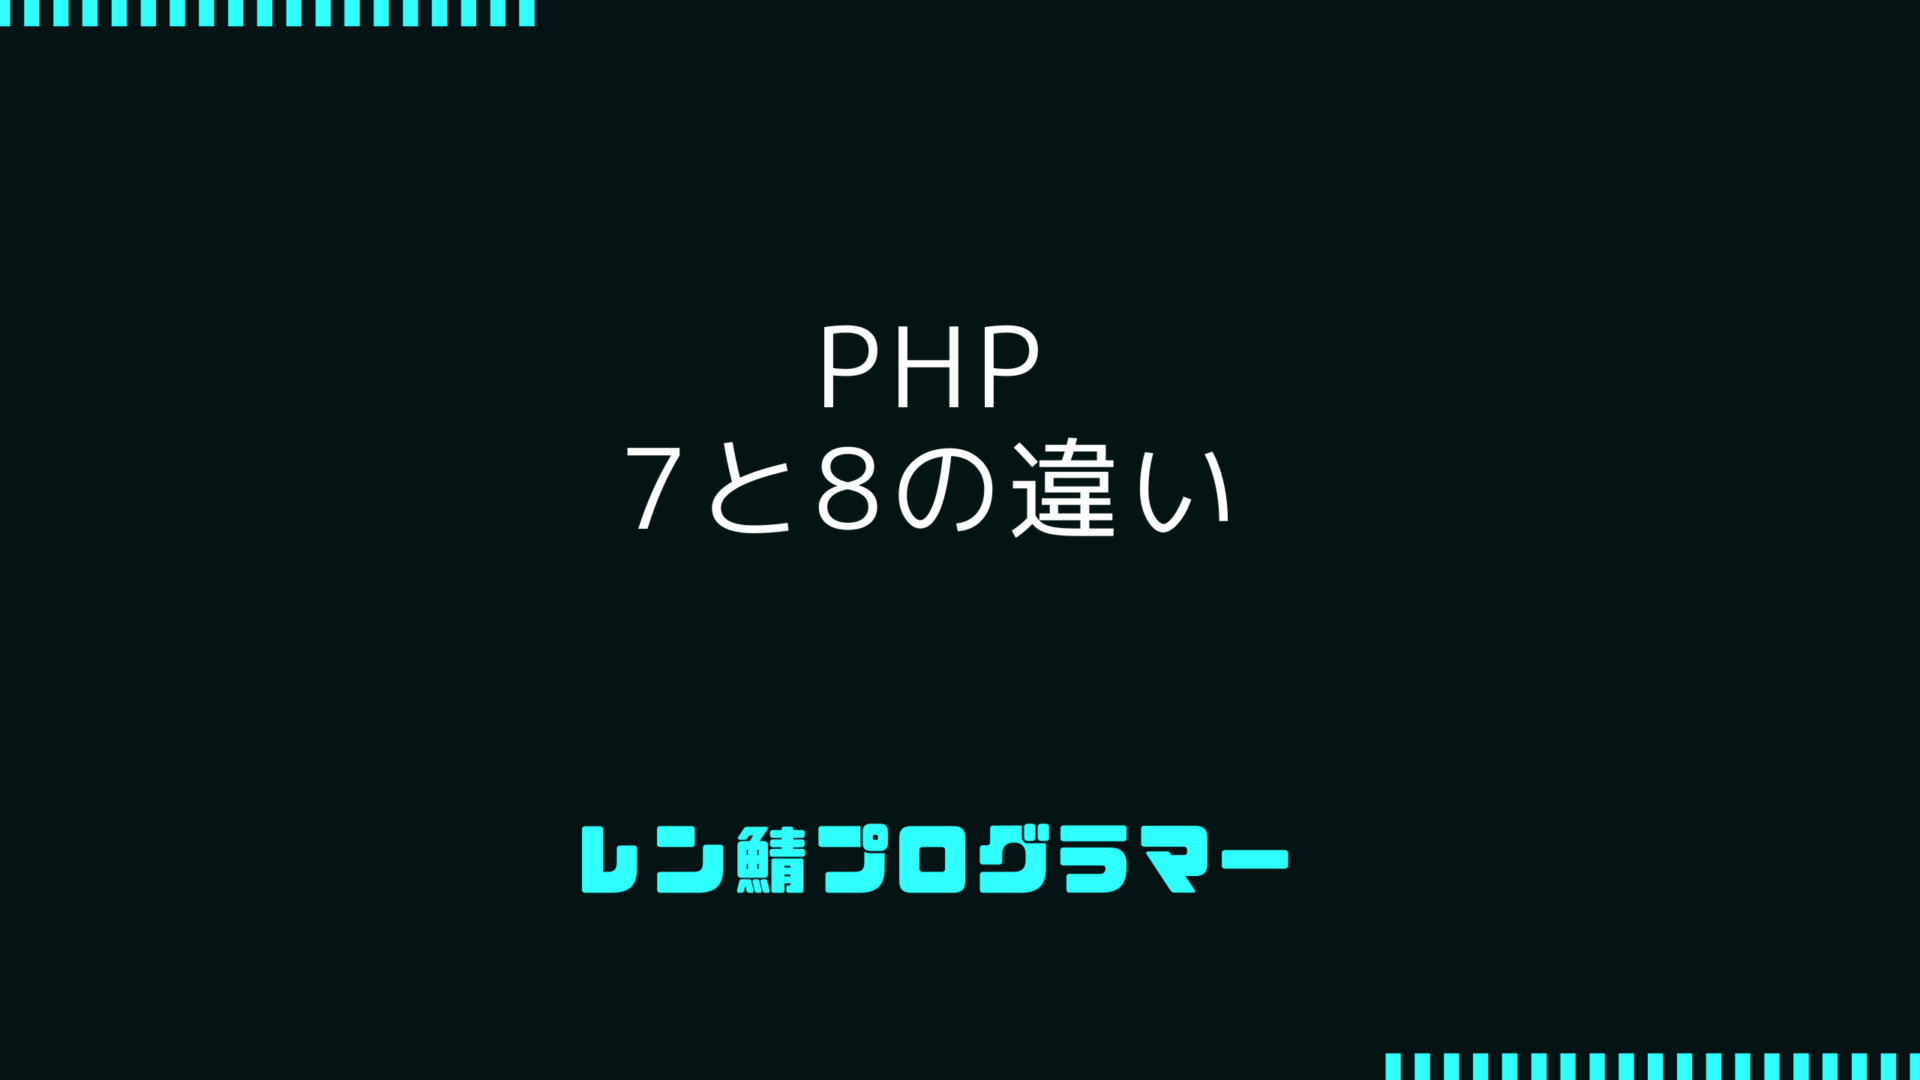 PHP 7と8の違い | パフォーマンス向上は最大1.5倍